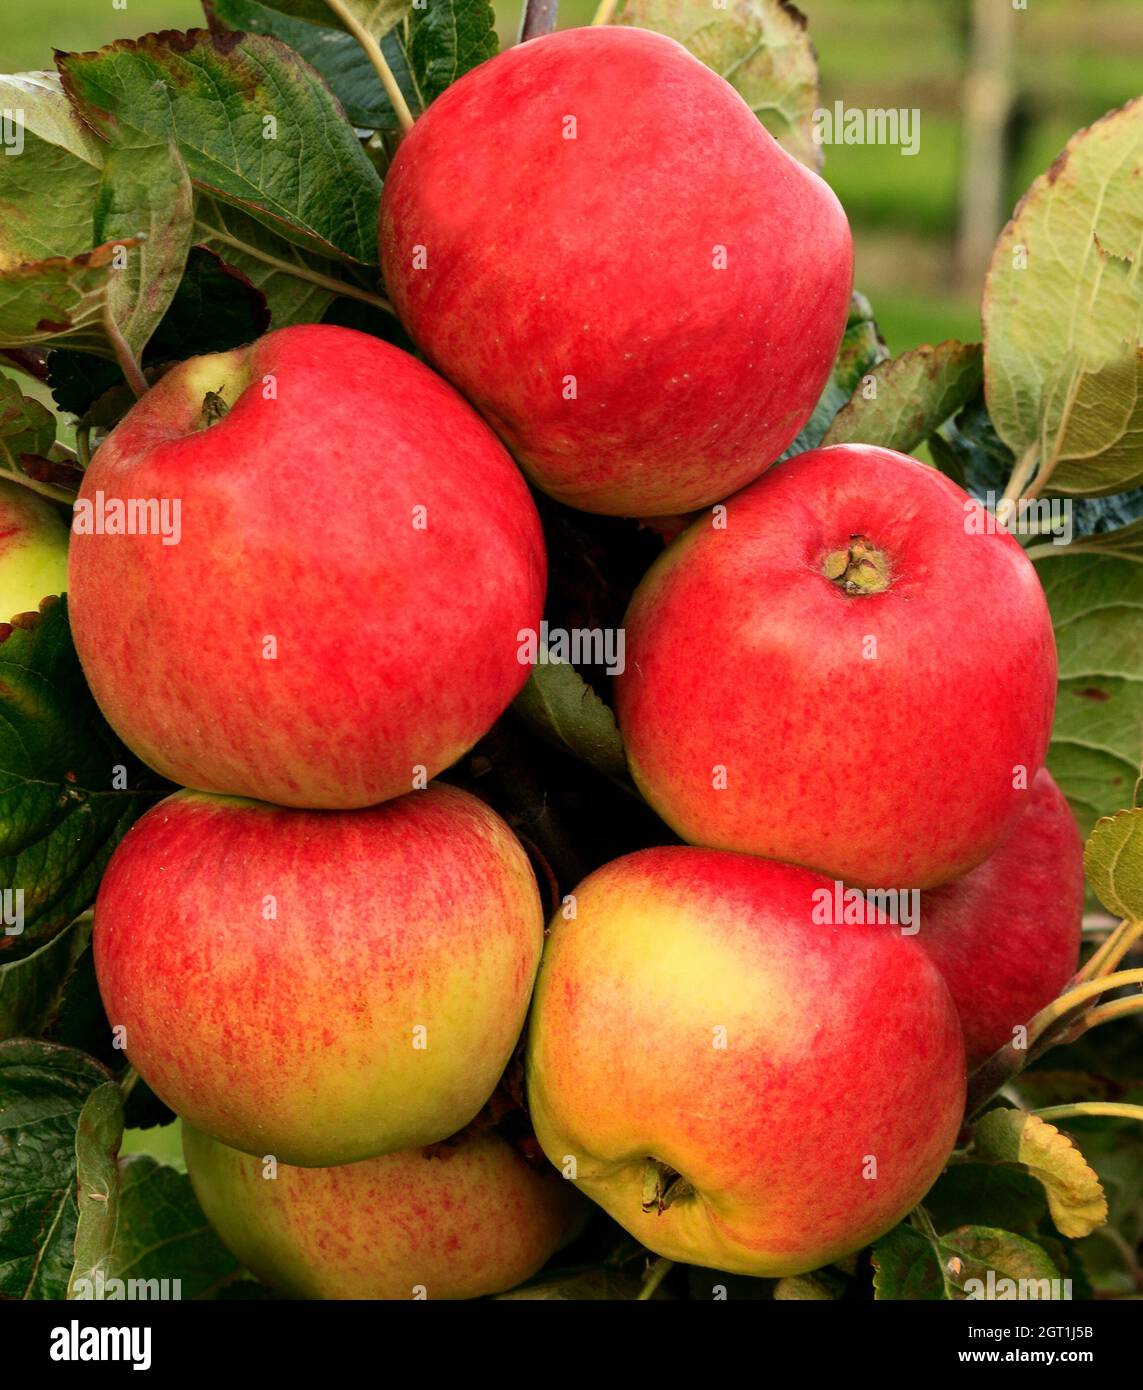 Mela 'monarch', malus domestica, mele, coltivando su albero, frutta, mangiare sano Foto Stock